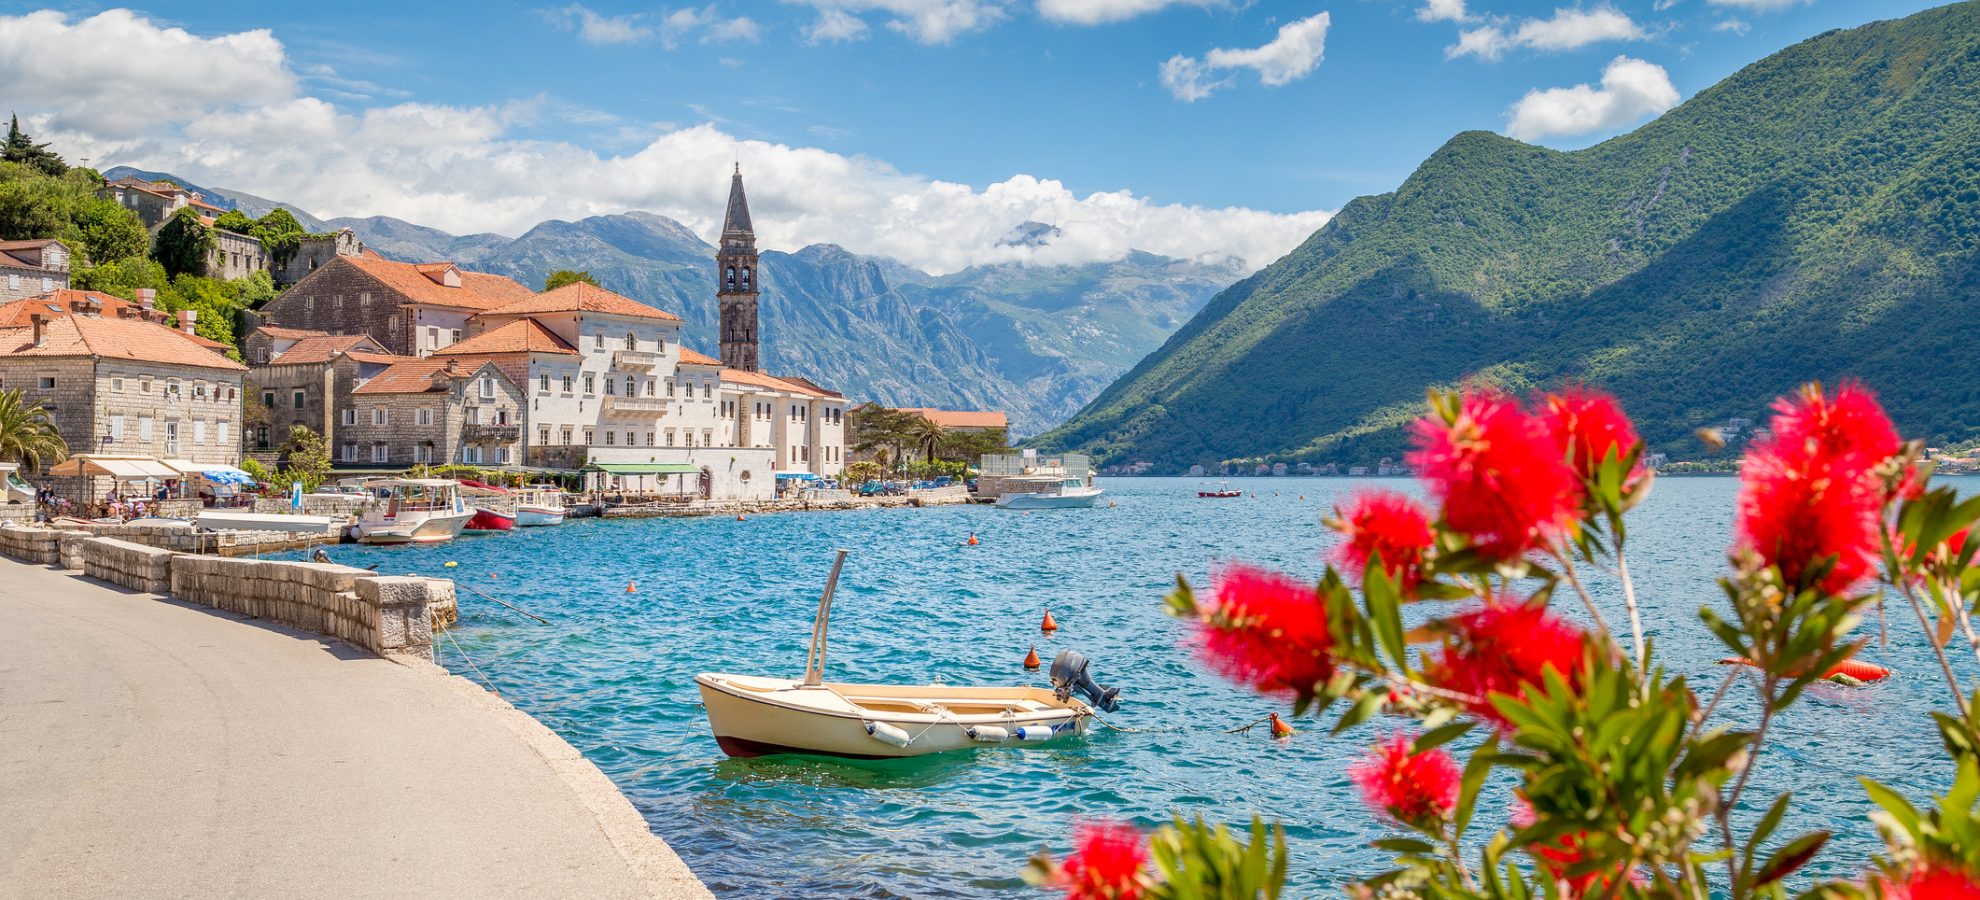 Historische stad van Perast op de baai van Kotor in de zomer, Montenegro